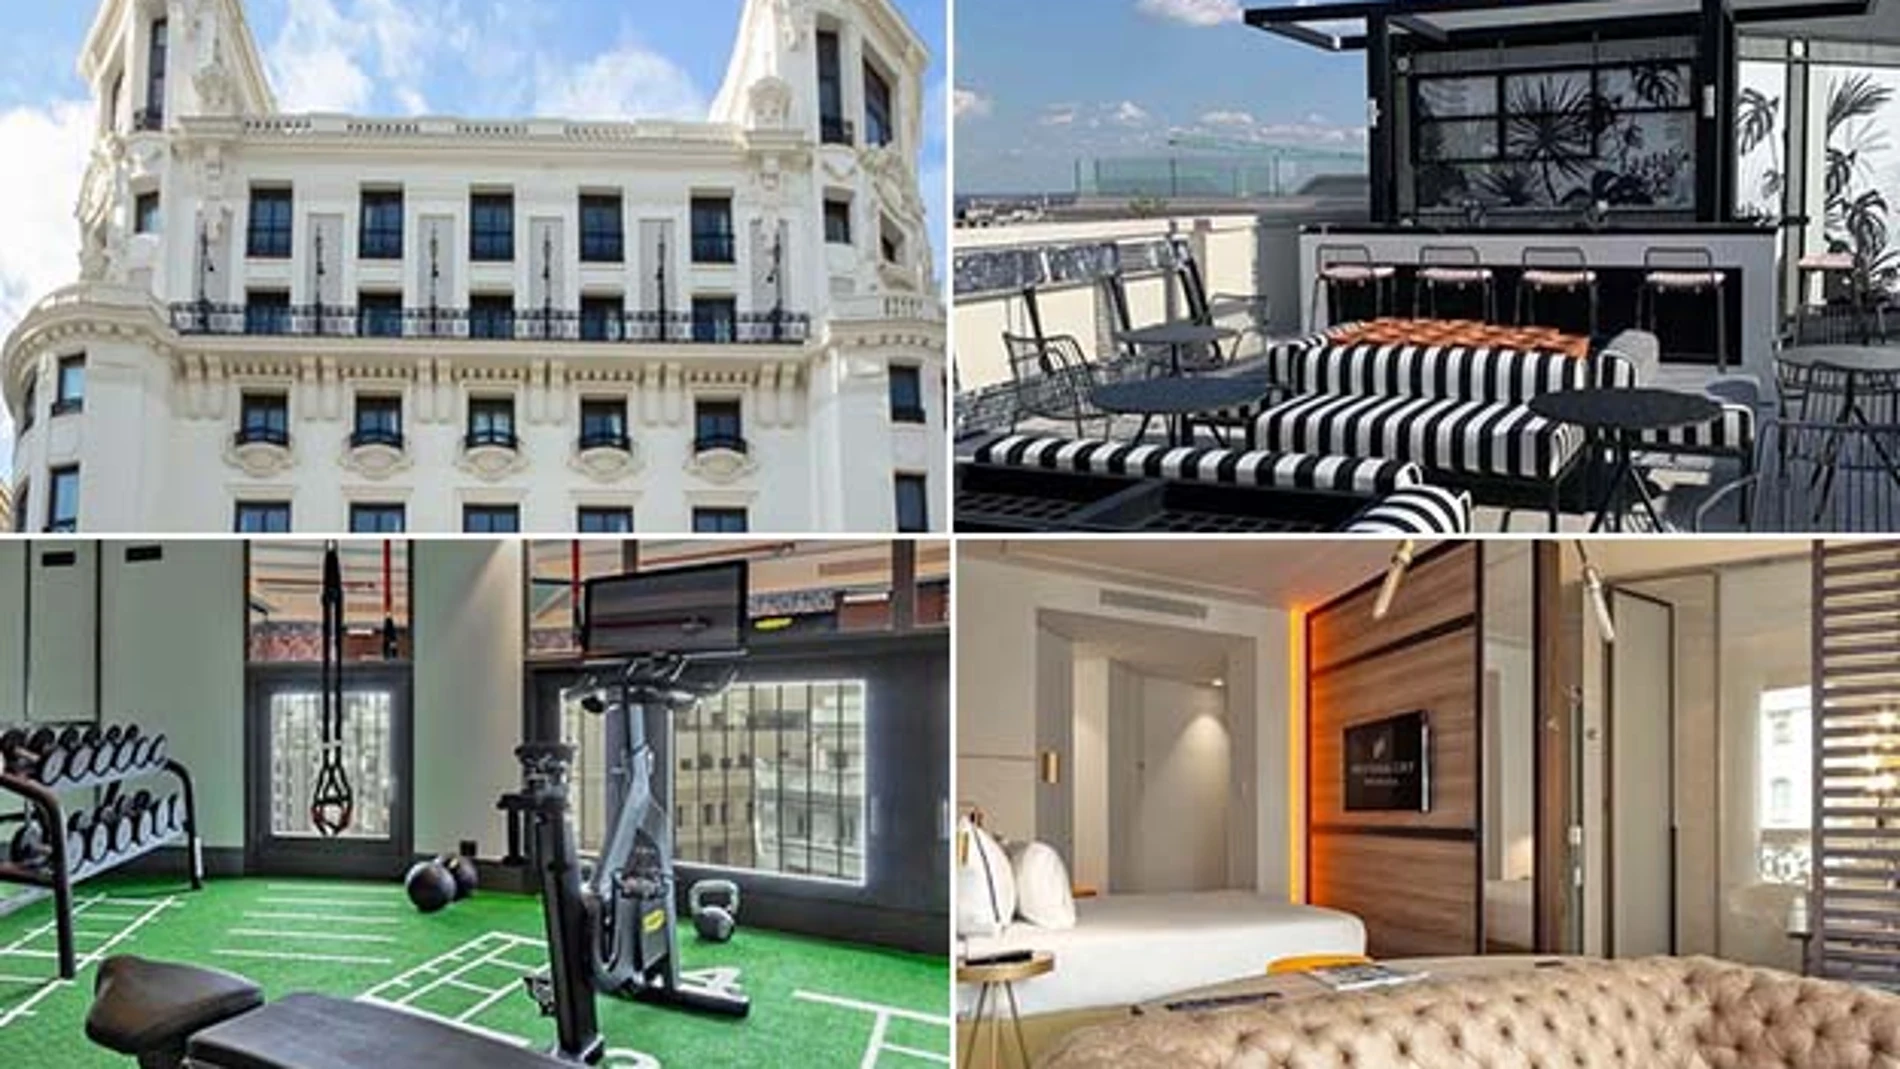 Imágenes del hotel Pestana CR7 Gran Vía Madrid, propiedad de Cristiano Ronaldo.